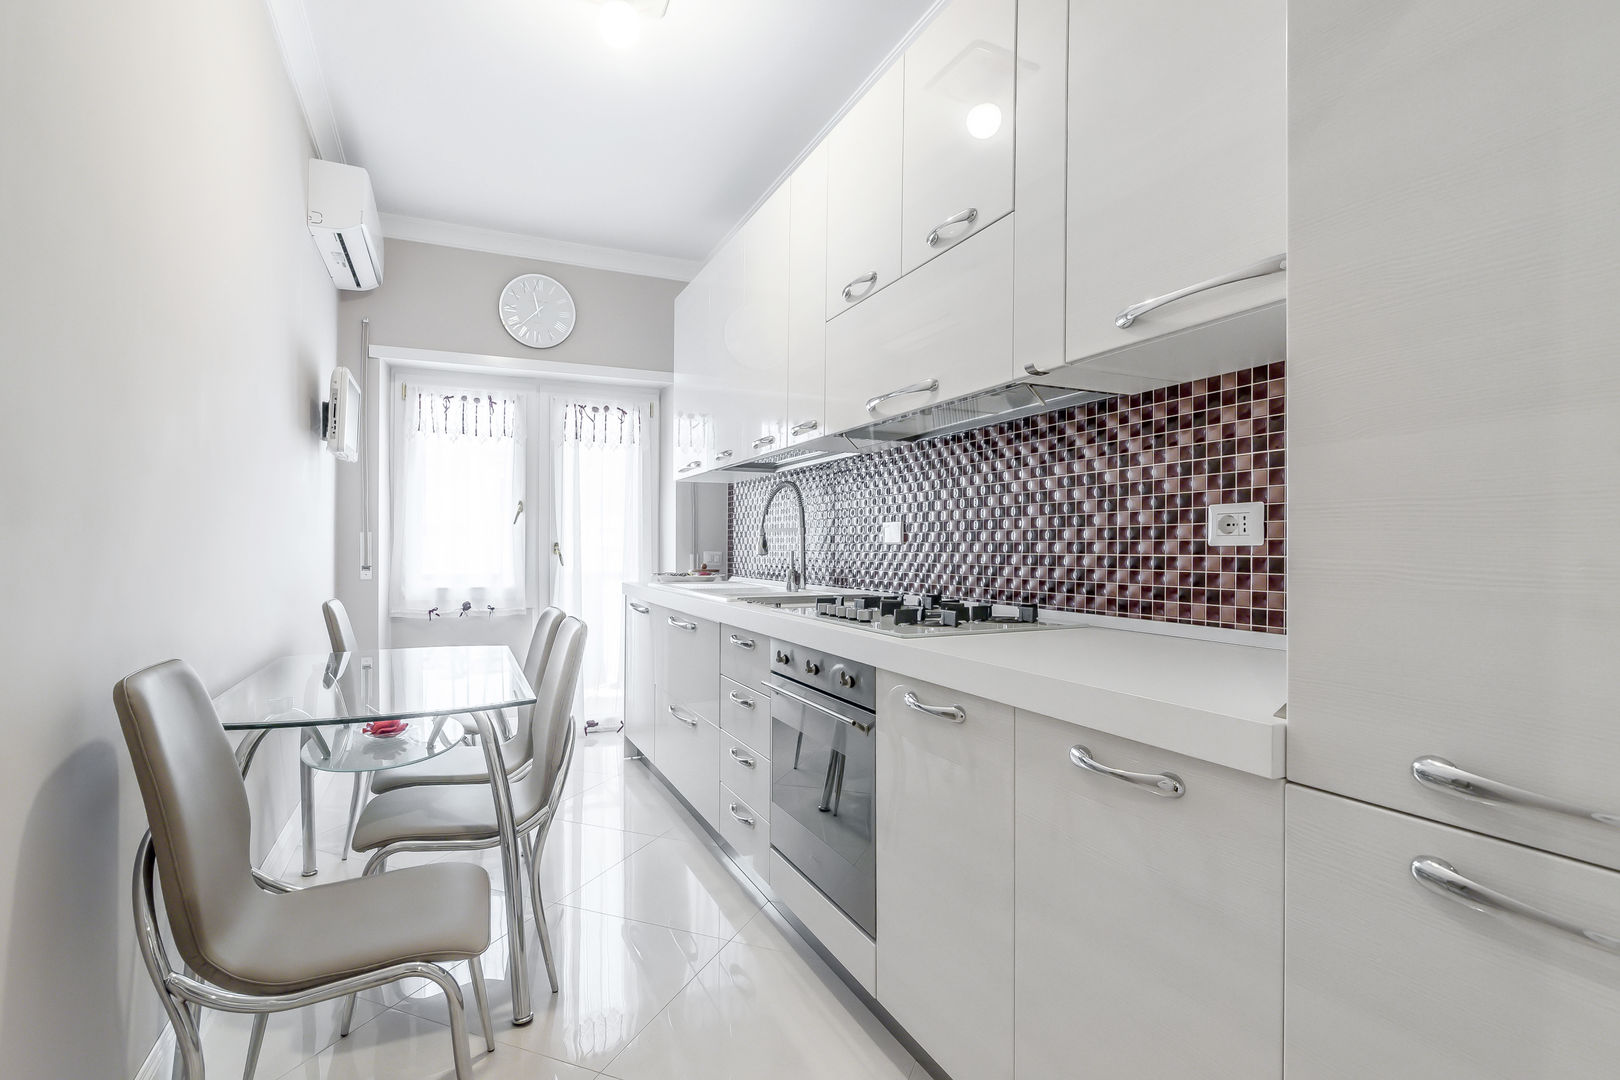 Ristrutturazione appartamento Roma: Nuova disposizione degli spazi, Facile Ristrutturare Facile Ristrutturare Modern kitchen